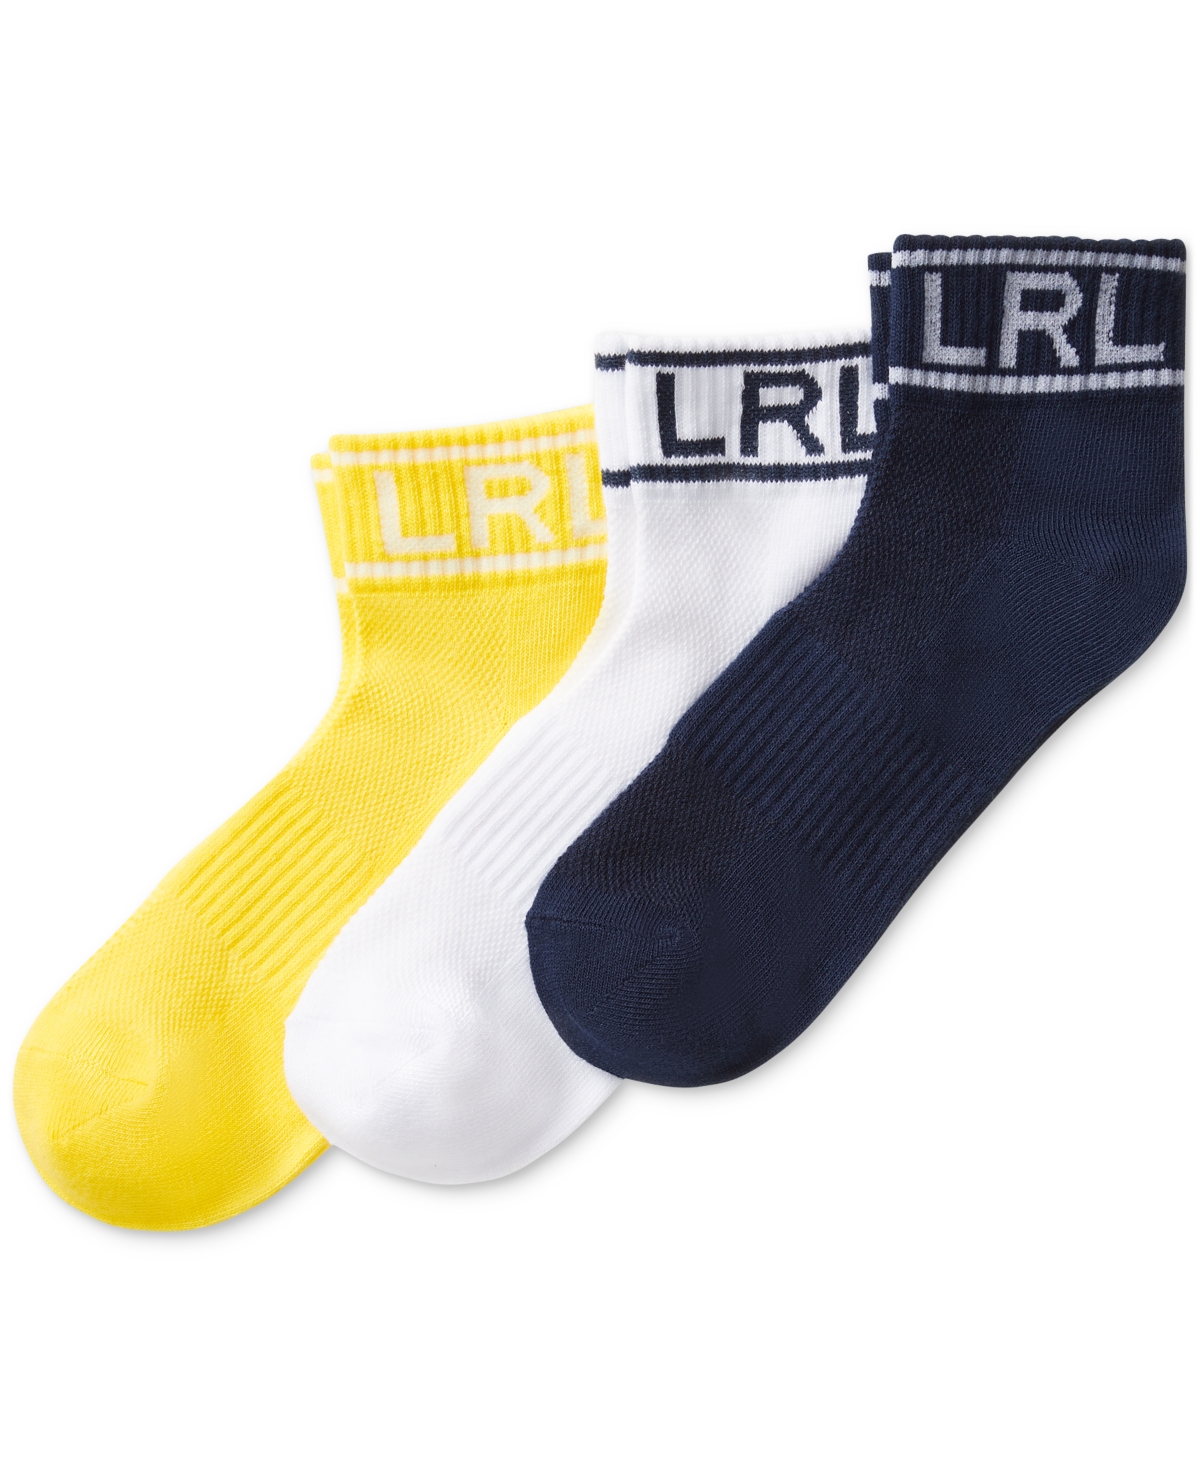 Women's 3-Pk. Lrl Quarter Ankle Socks - Navy Assorted